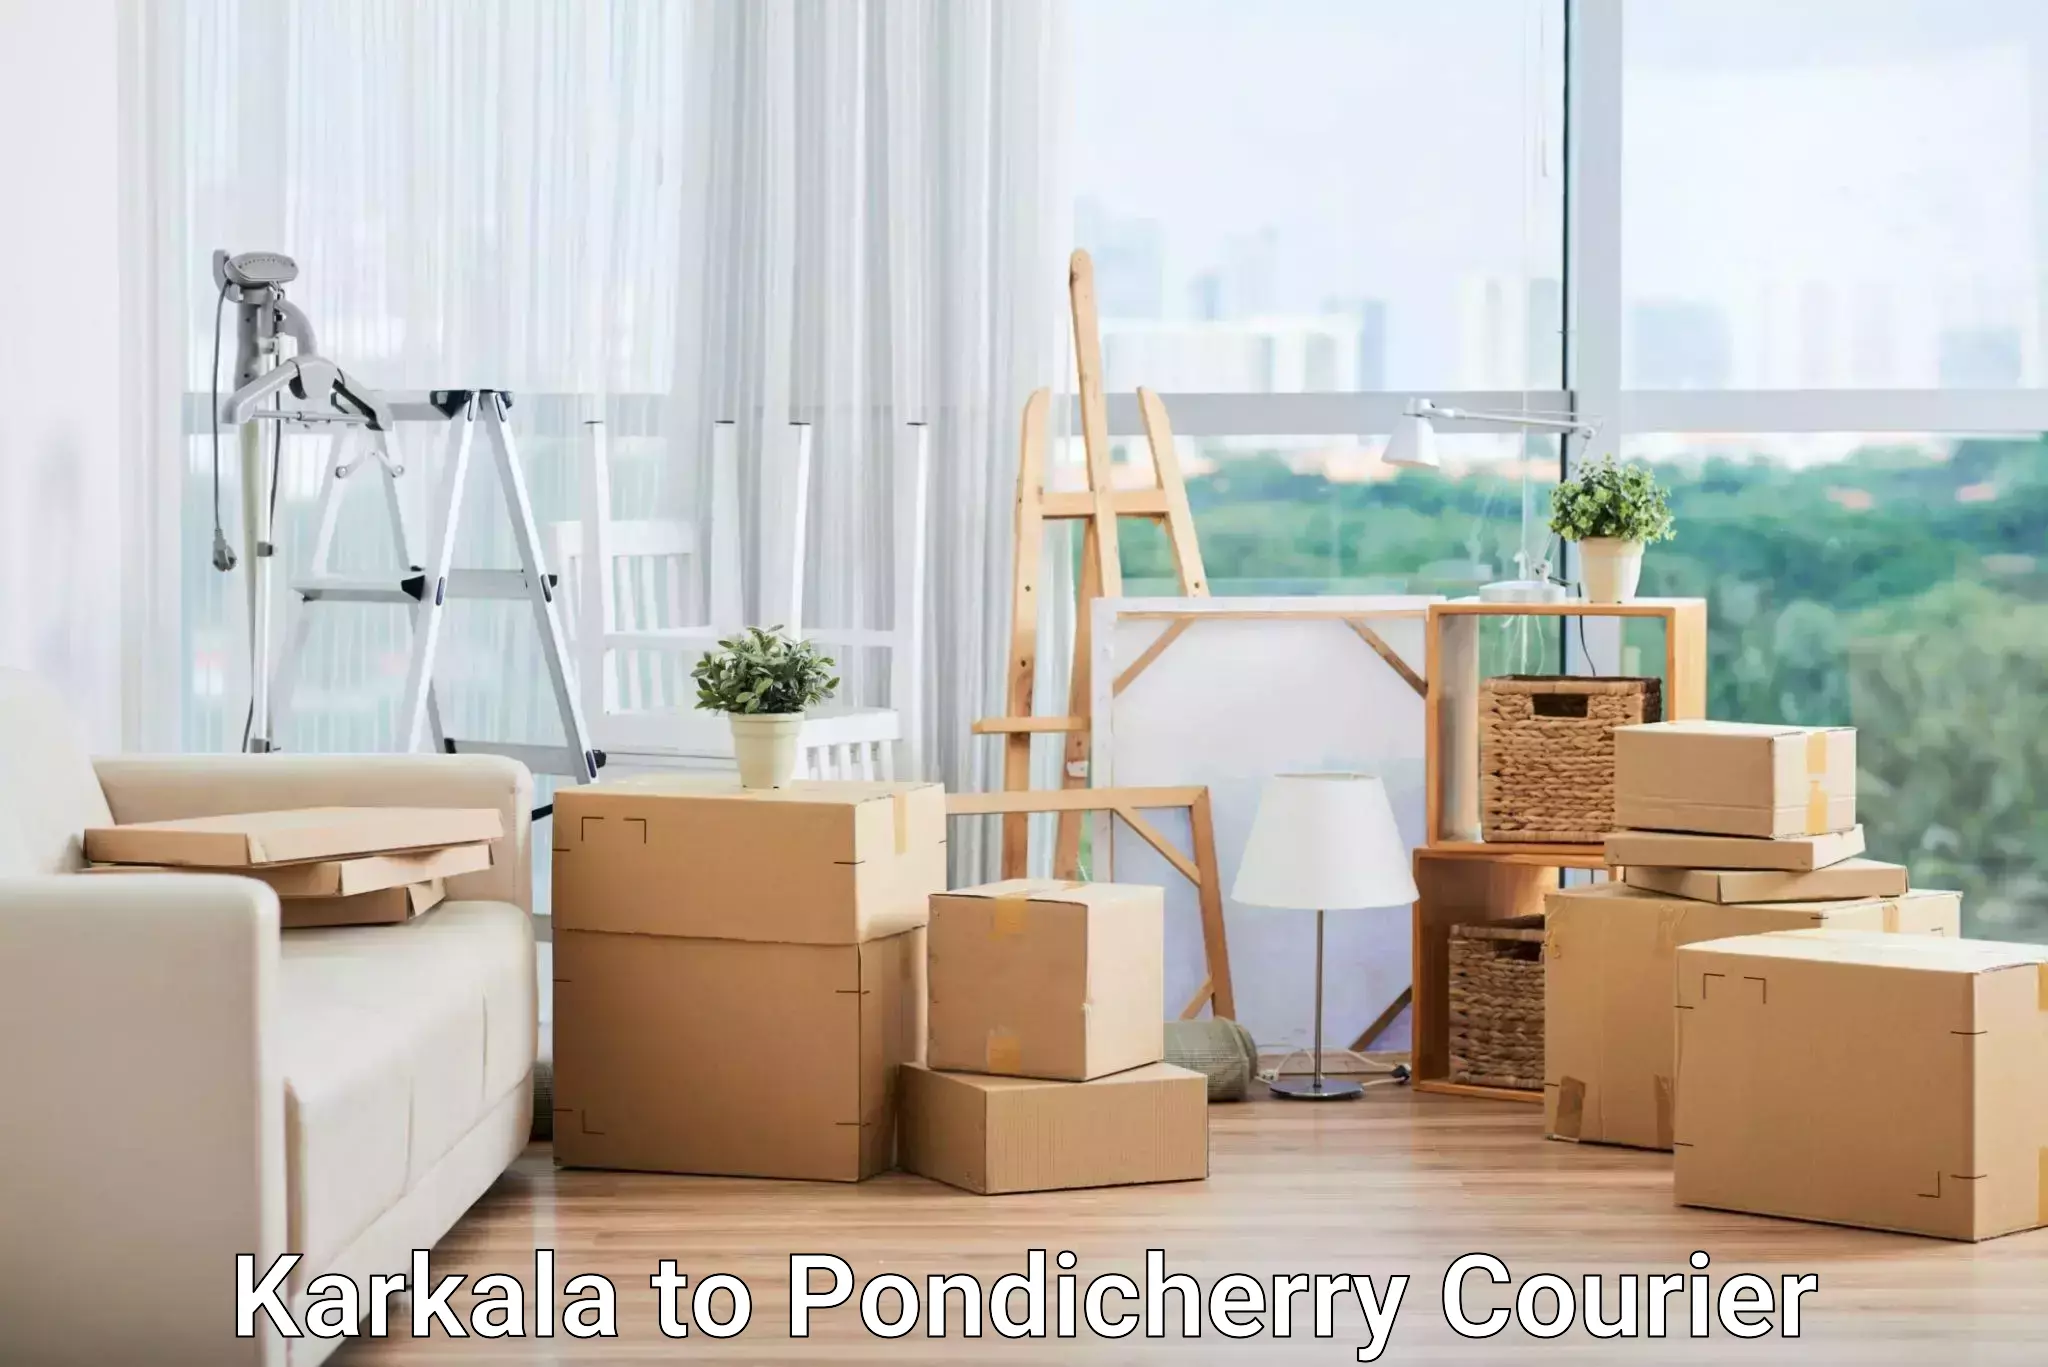 Delivery service partnership Karkala to Pondicherry